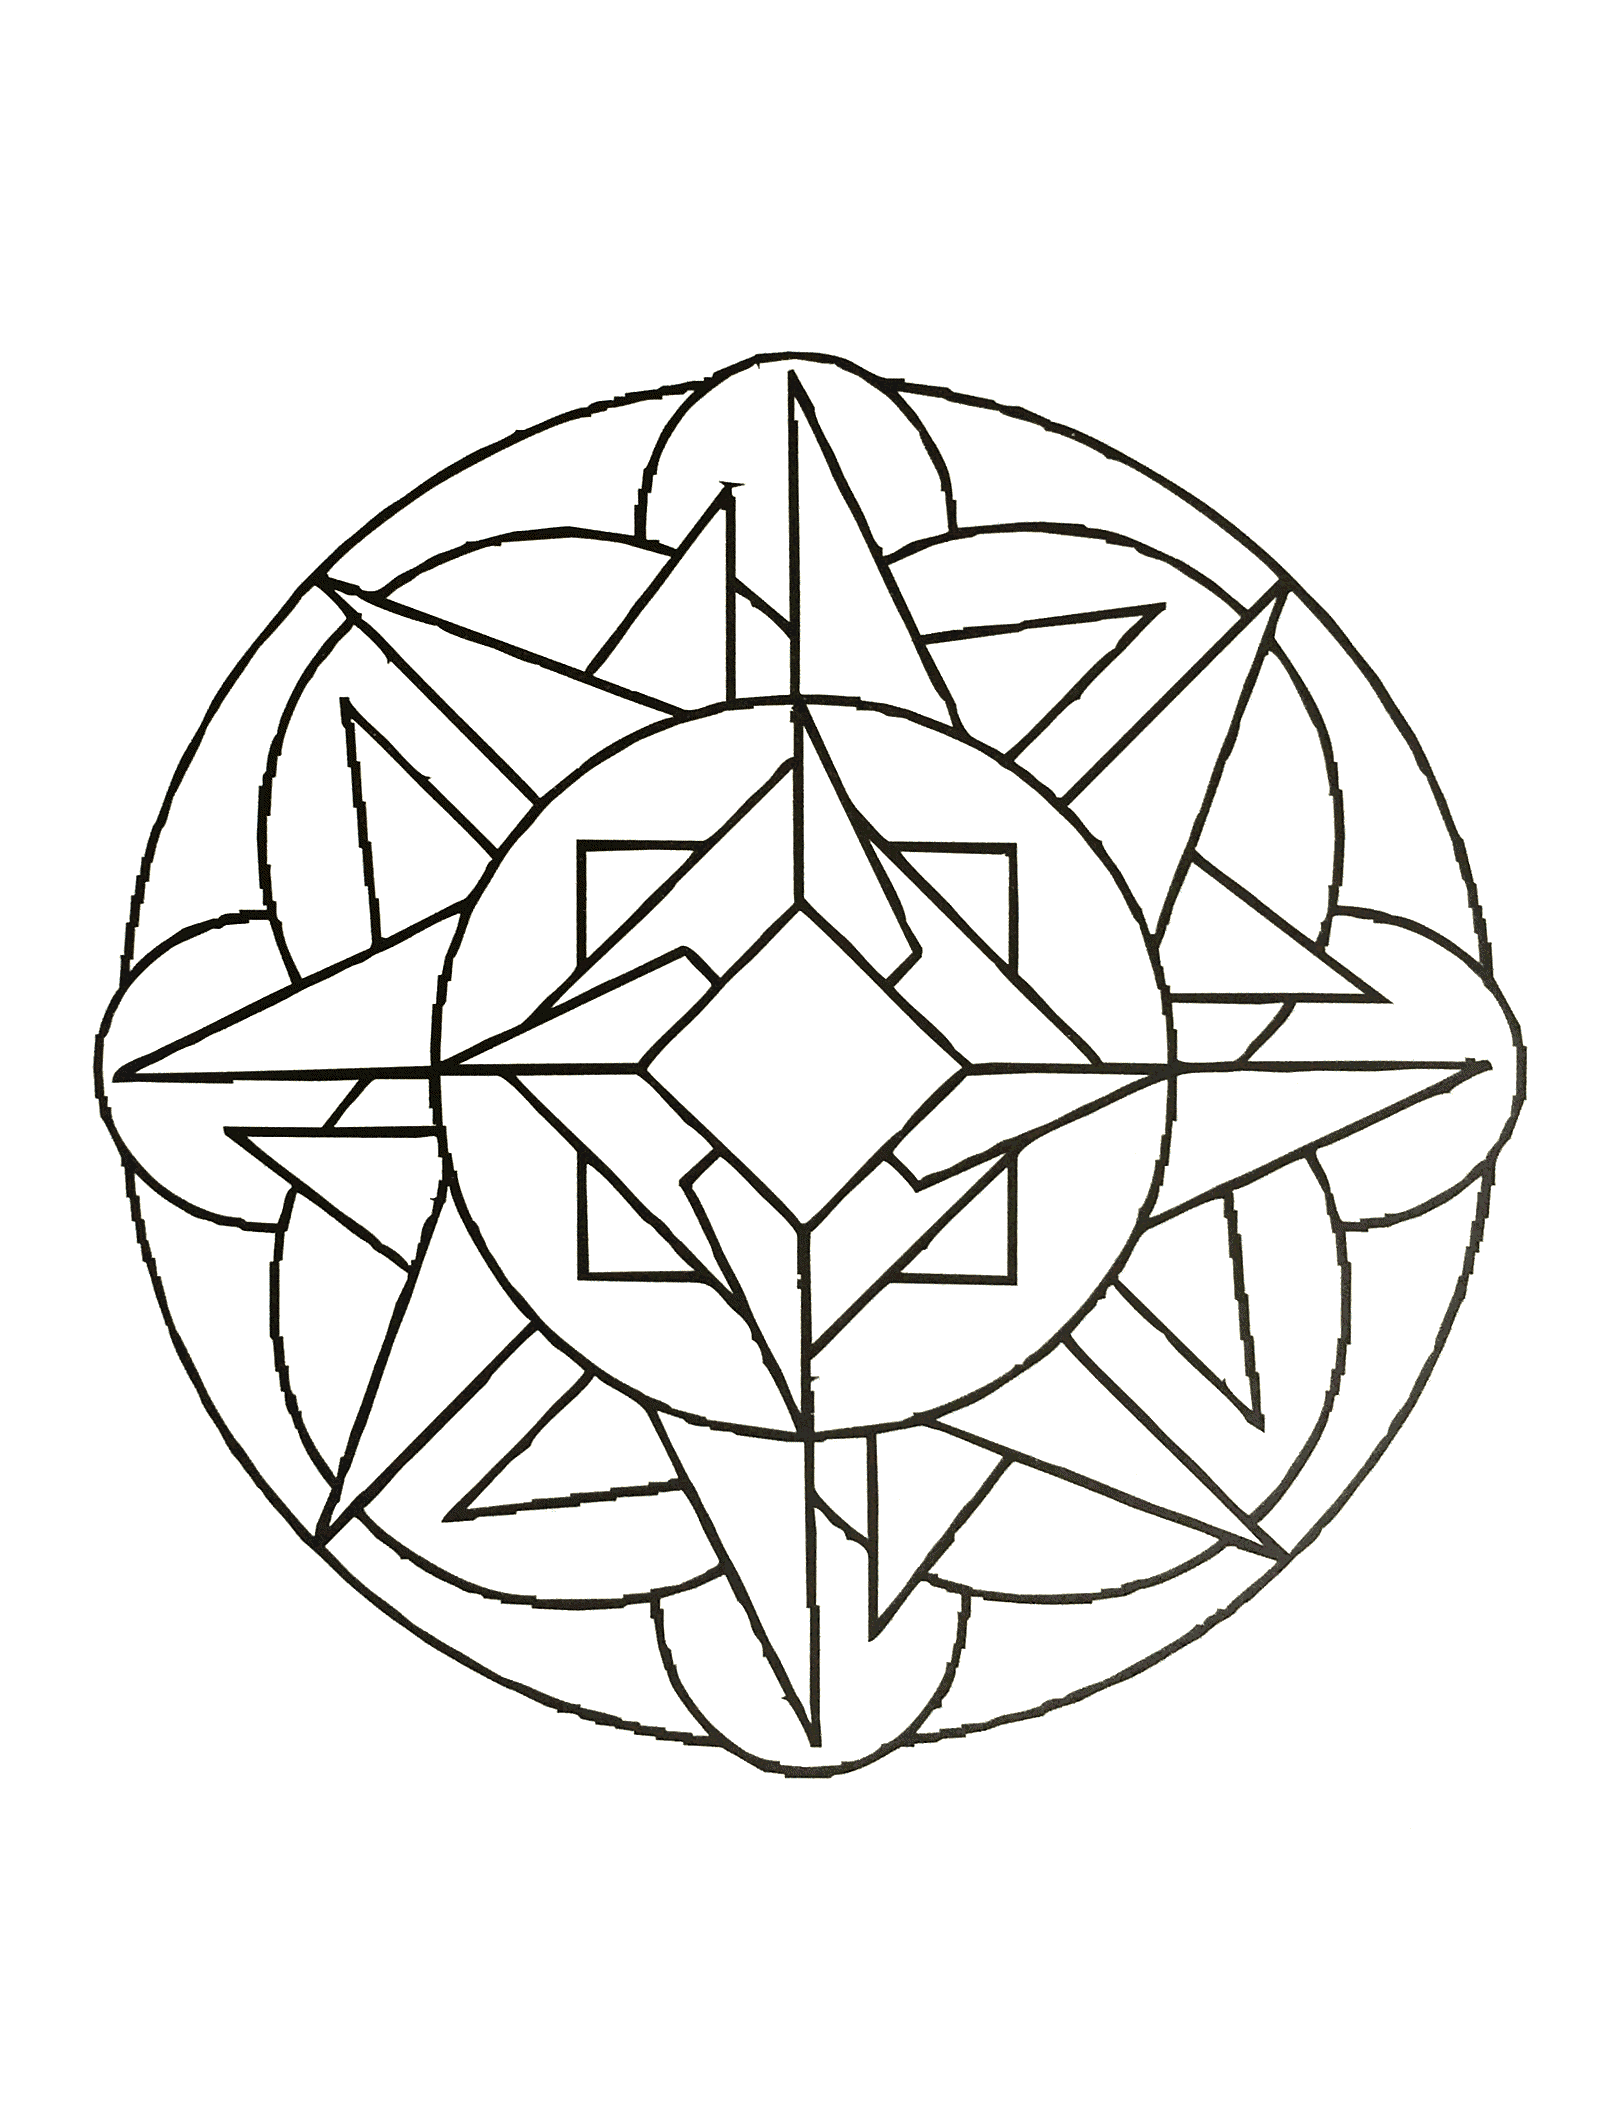 Mandala à télécharger de forme géométrique où figures plusieurs éléments géométrique comme des carrés, des arcs des cercles ainsi que des triangles.